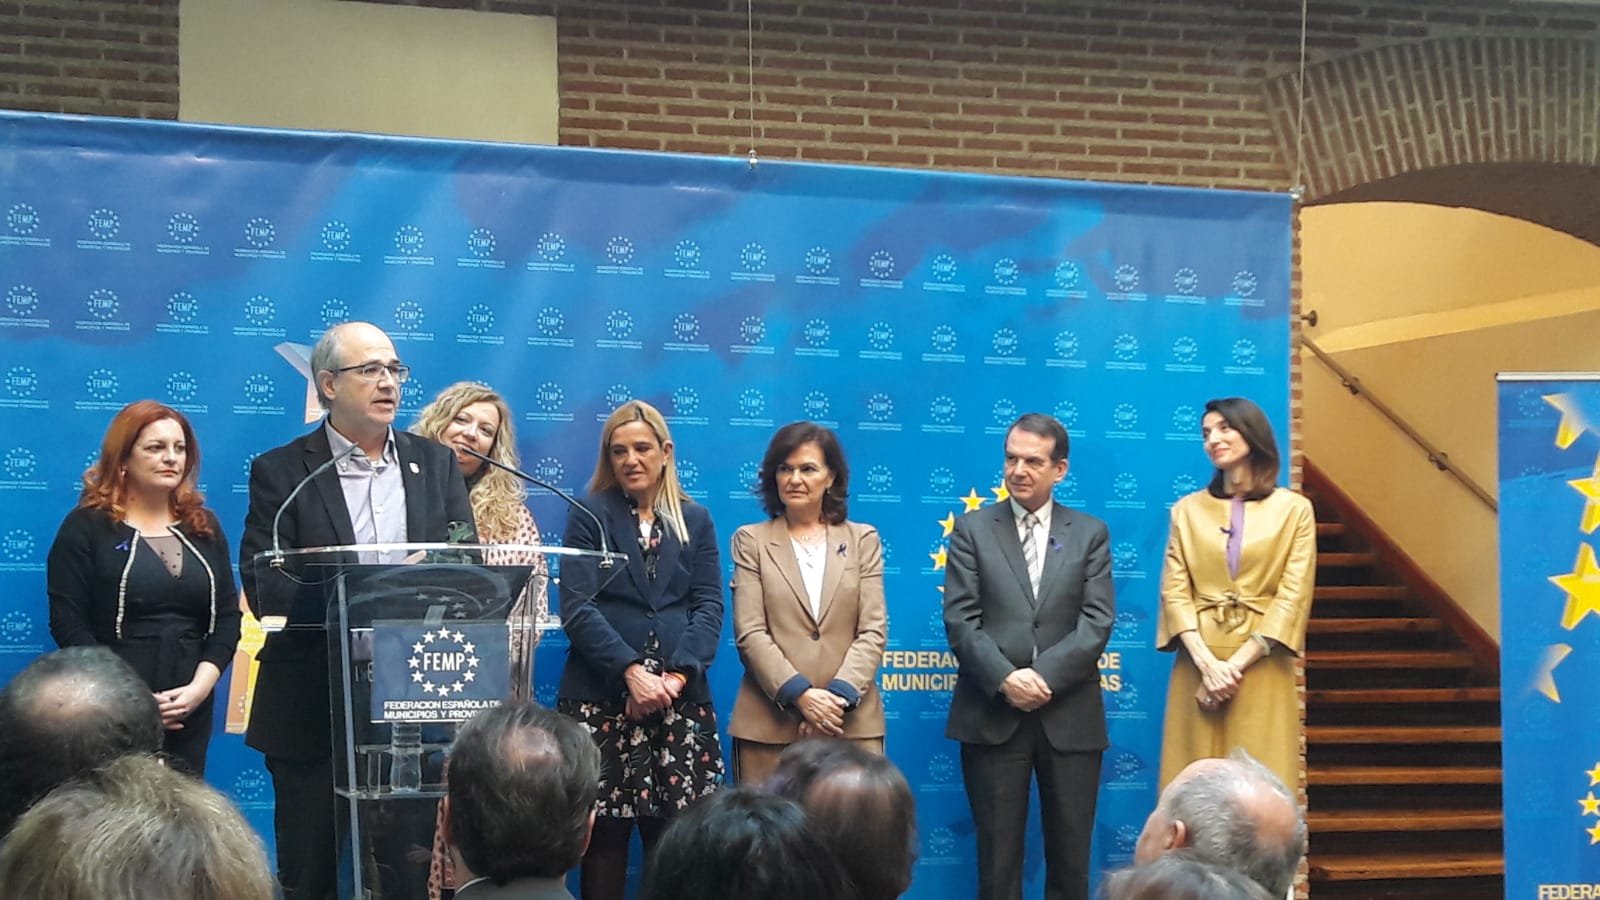 La Vicepresidenta del Gobierno entrega a Villena el premio a las buenas prácticas contra la violencia de género